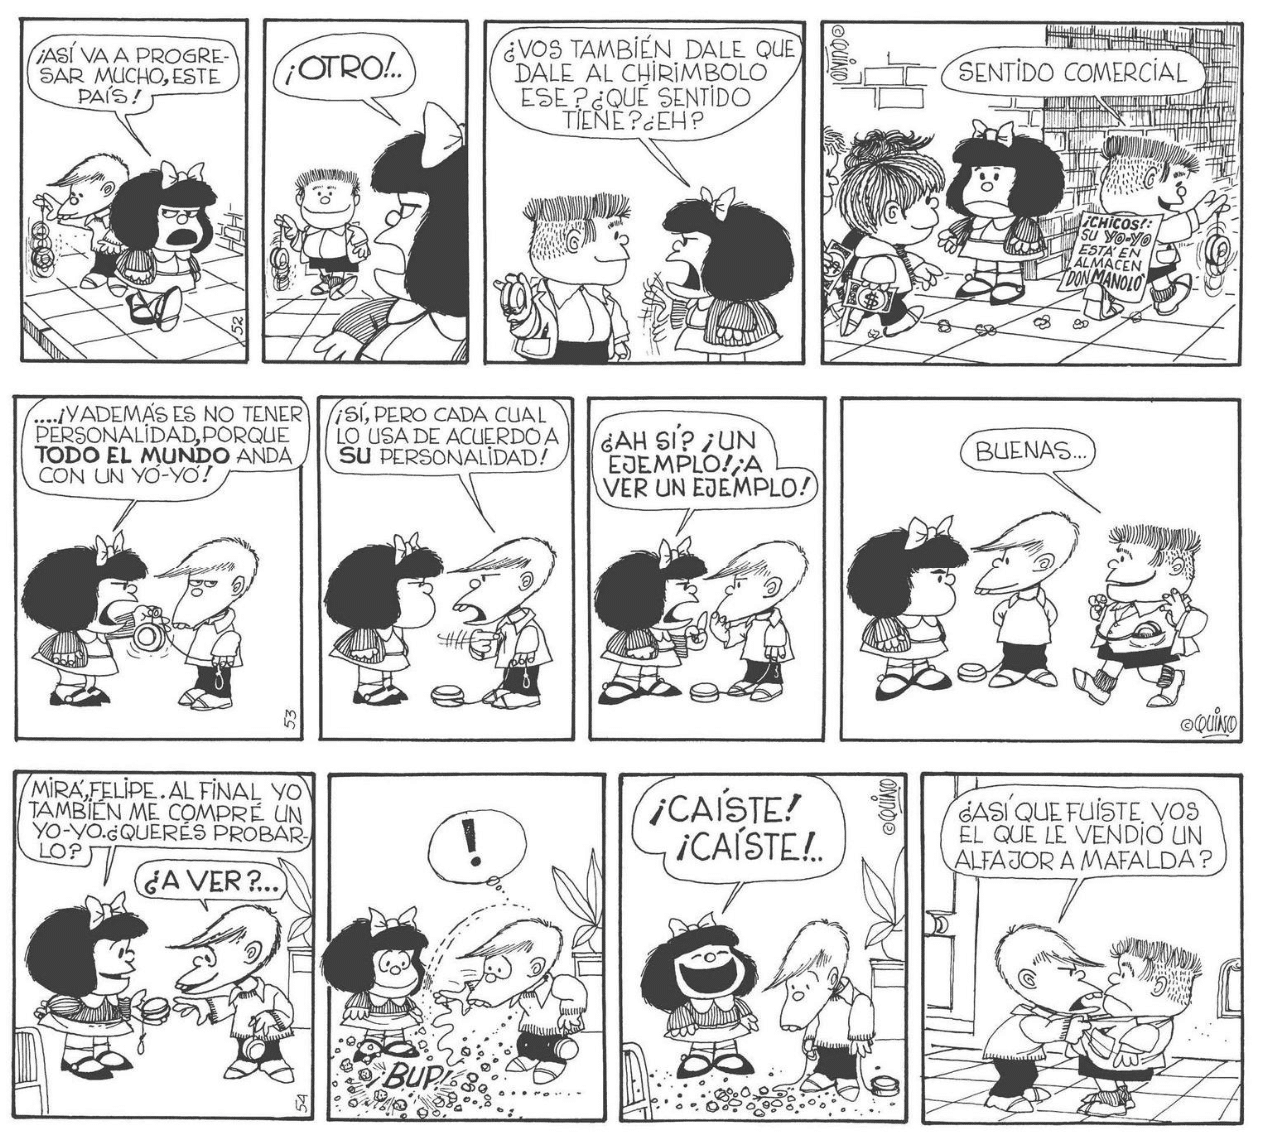 Los invidentes también podrán disfrutar de los cómic de Mafalda, ¡por fin en braille! 18